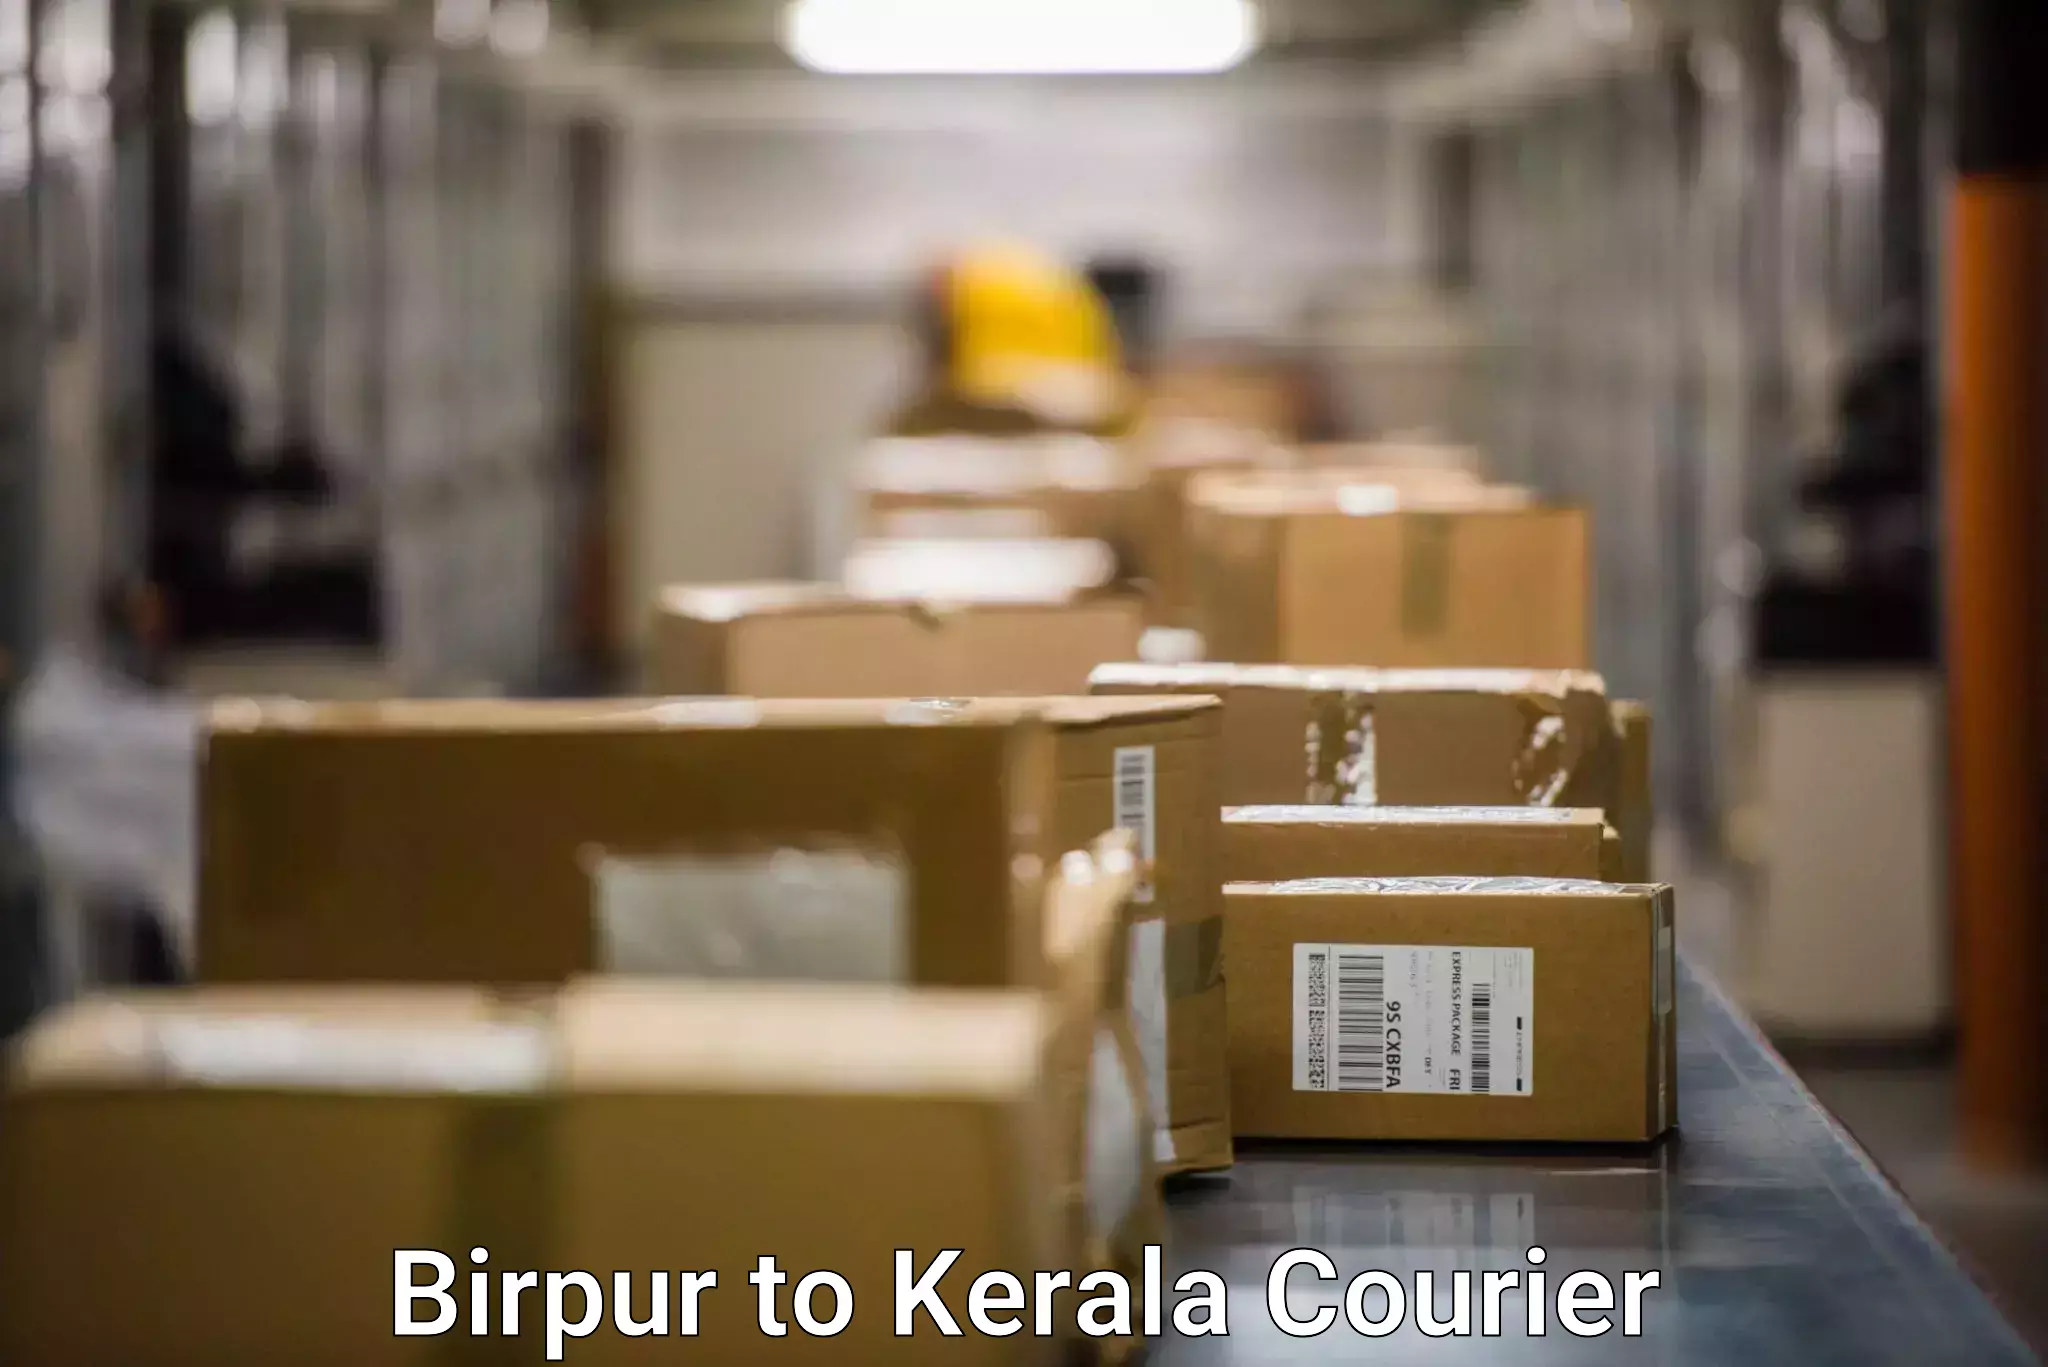 Comprehensive freight services Birpur to Thiruvananthapuram